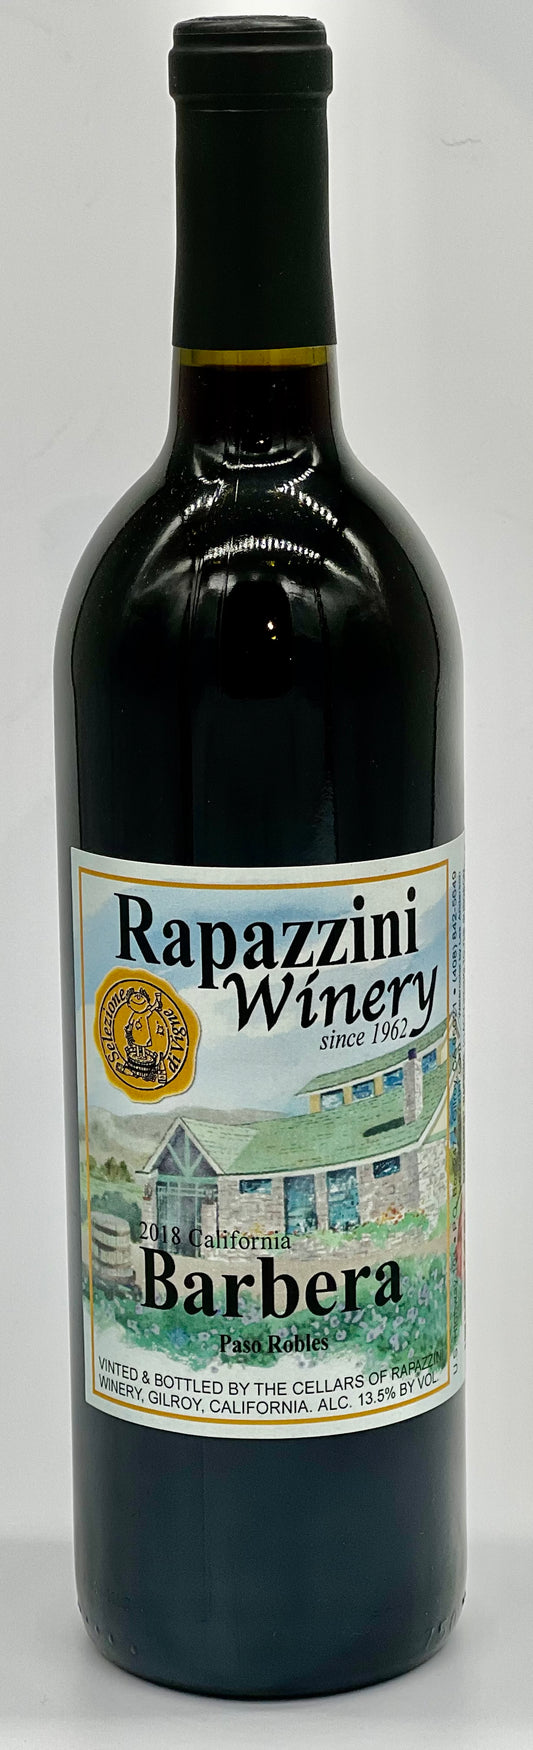 Barbera 2018 Paso Robles California Rapazzini.Wine 750 ml 25 oz 13.5%alcohol $34